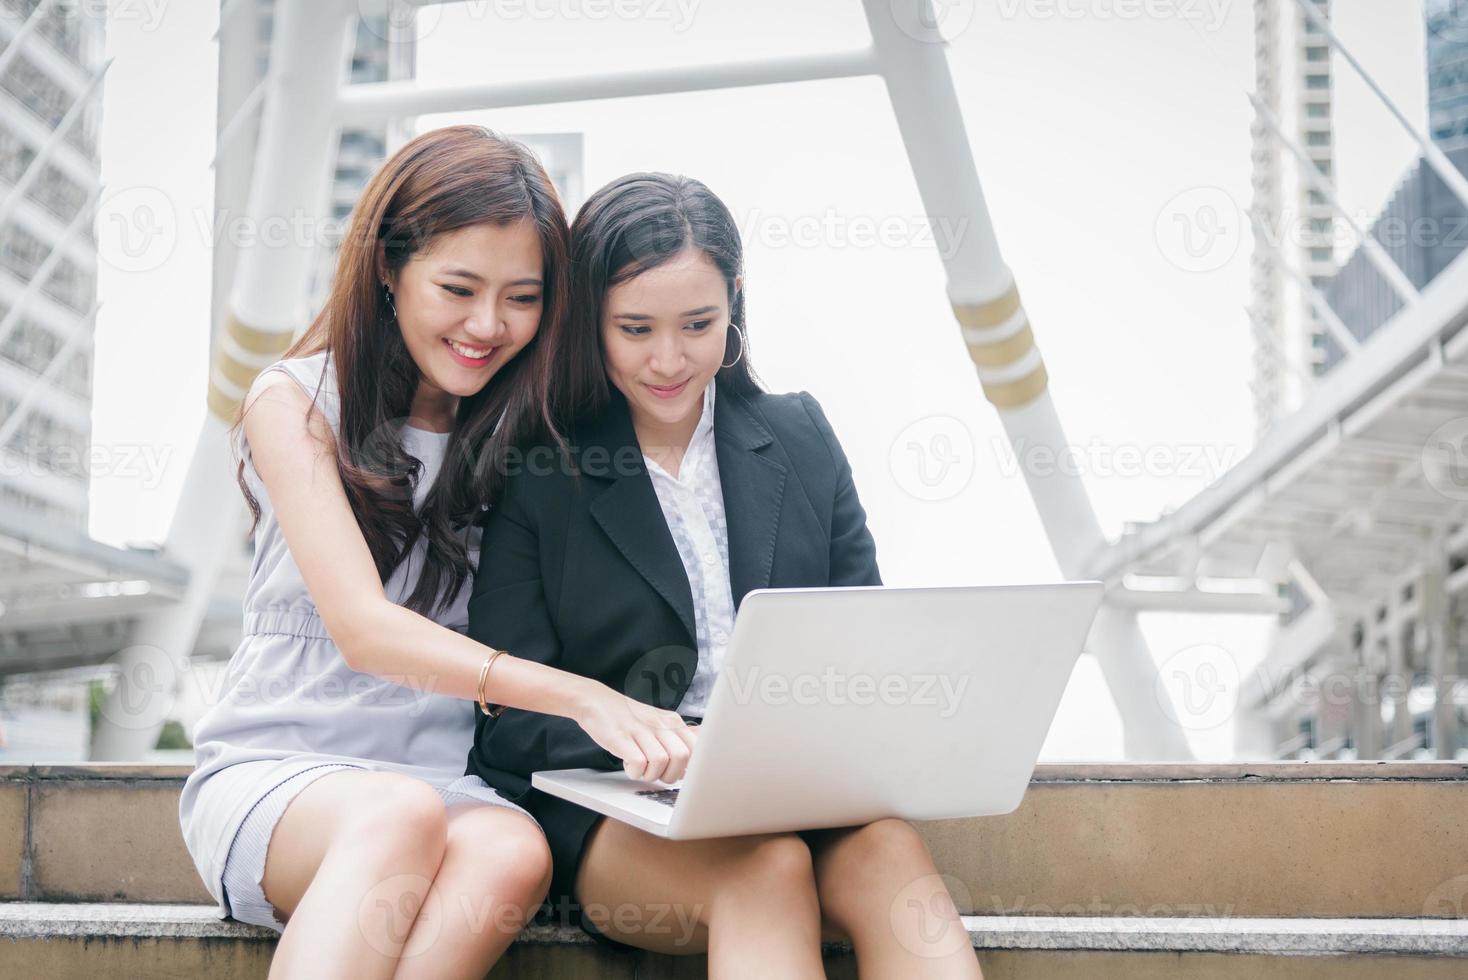 deux femmes d'affaires travaillant sur un ordinateur portable avec une émotion drôle et heureuse. travail d'équipe réunion de coopération de la collaboration technologique des employés de bureau d'affaires. interaction avec la communauté marketing et financière photo